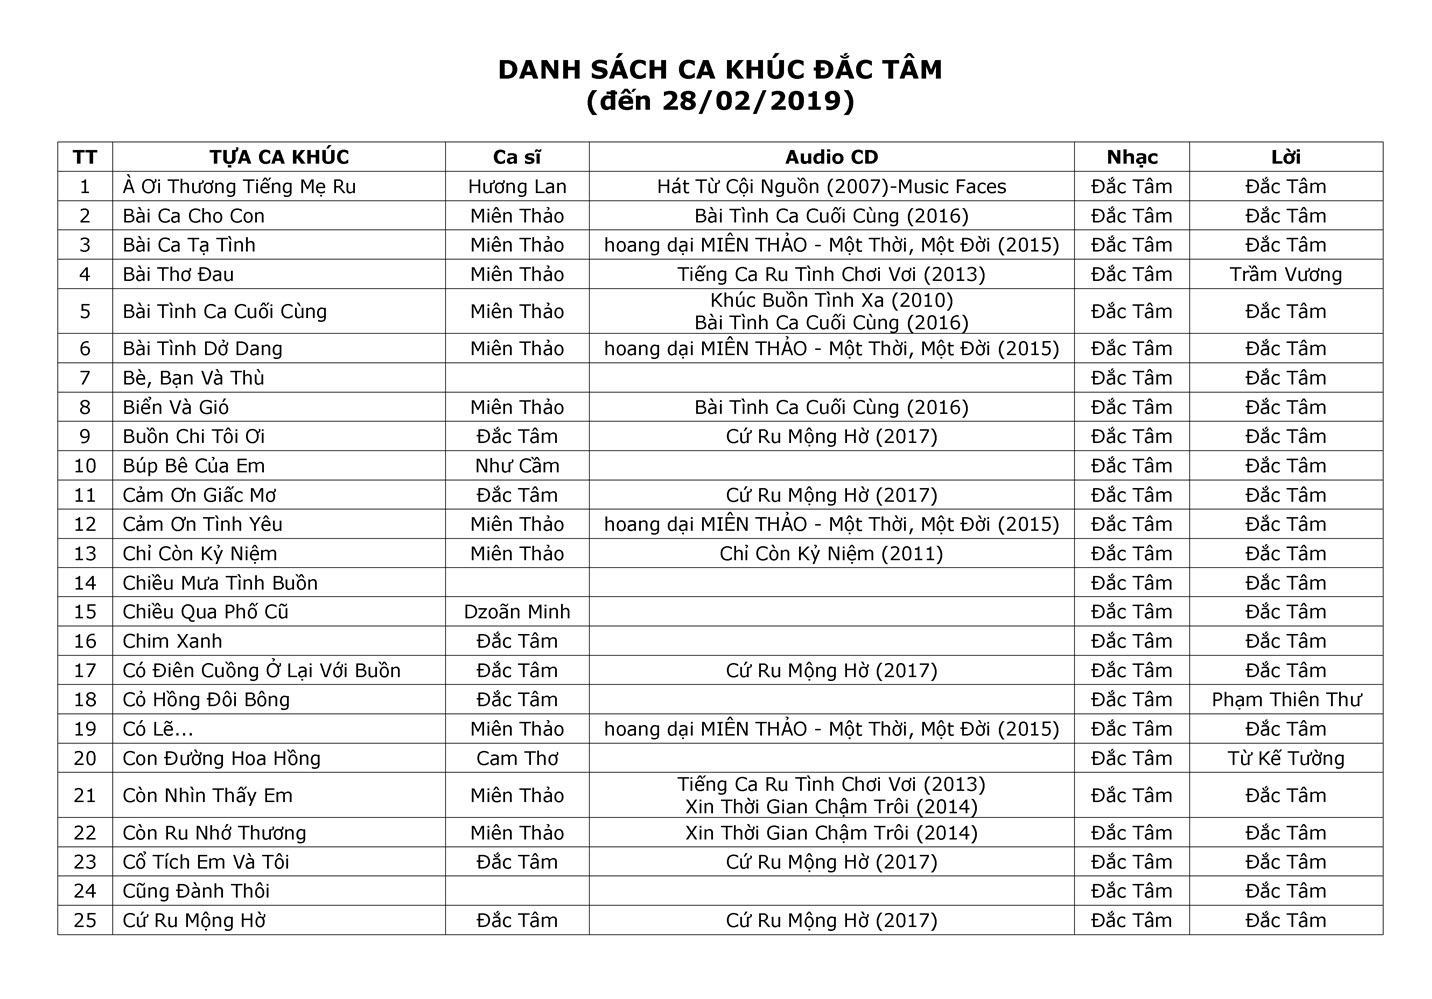 Danh sach ca khuc Dac Tam-Feb 2019-1.jpg